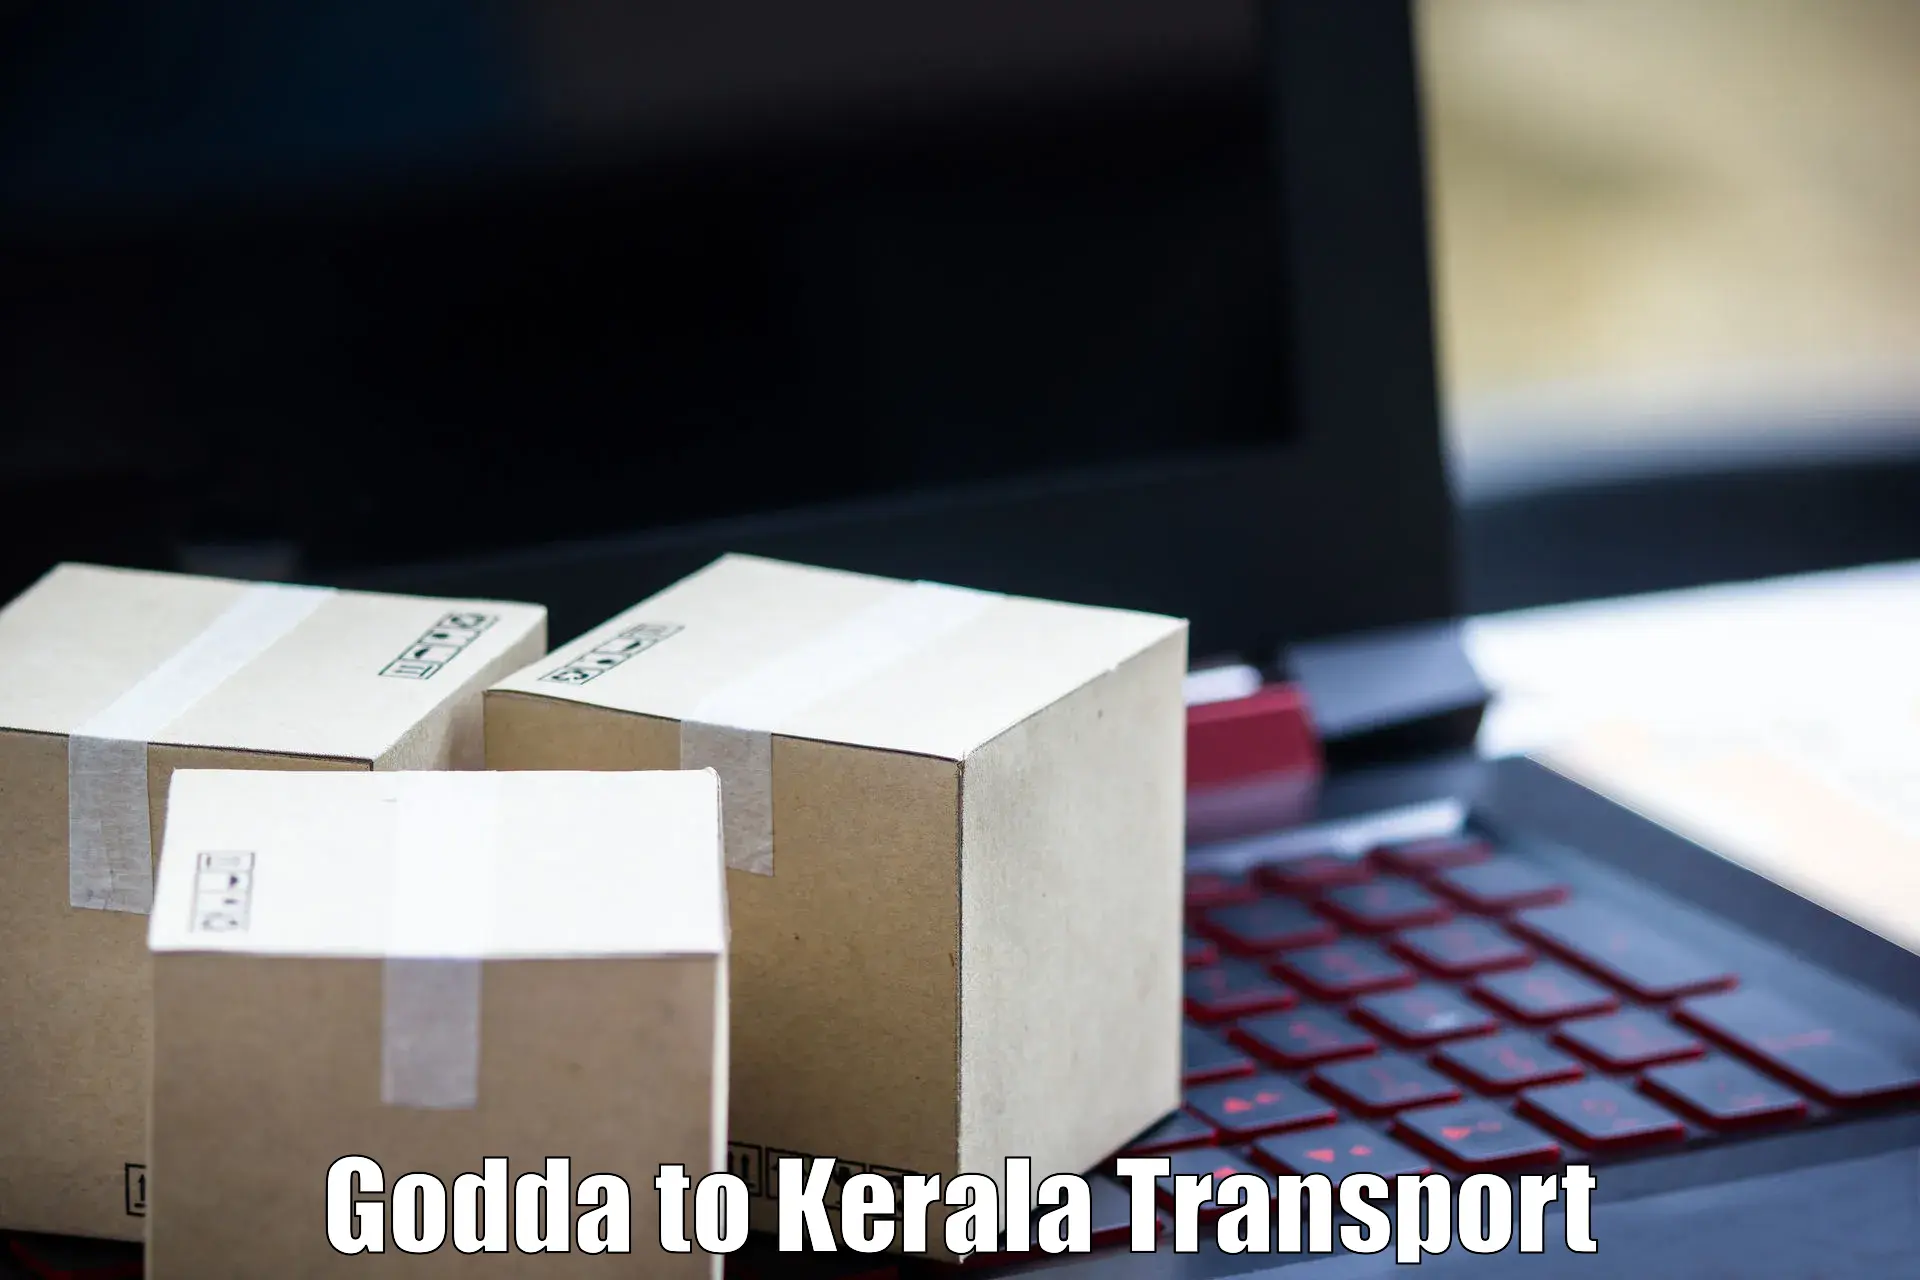 Daily transport service Godda to Mundakayam